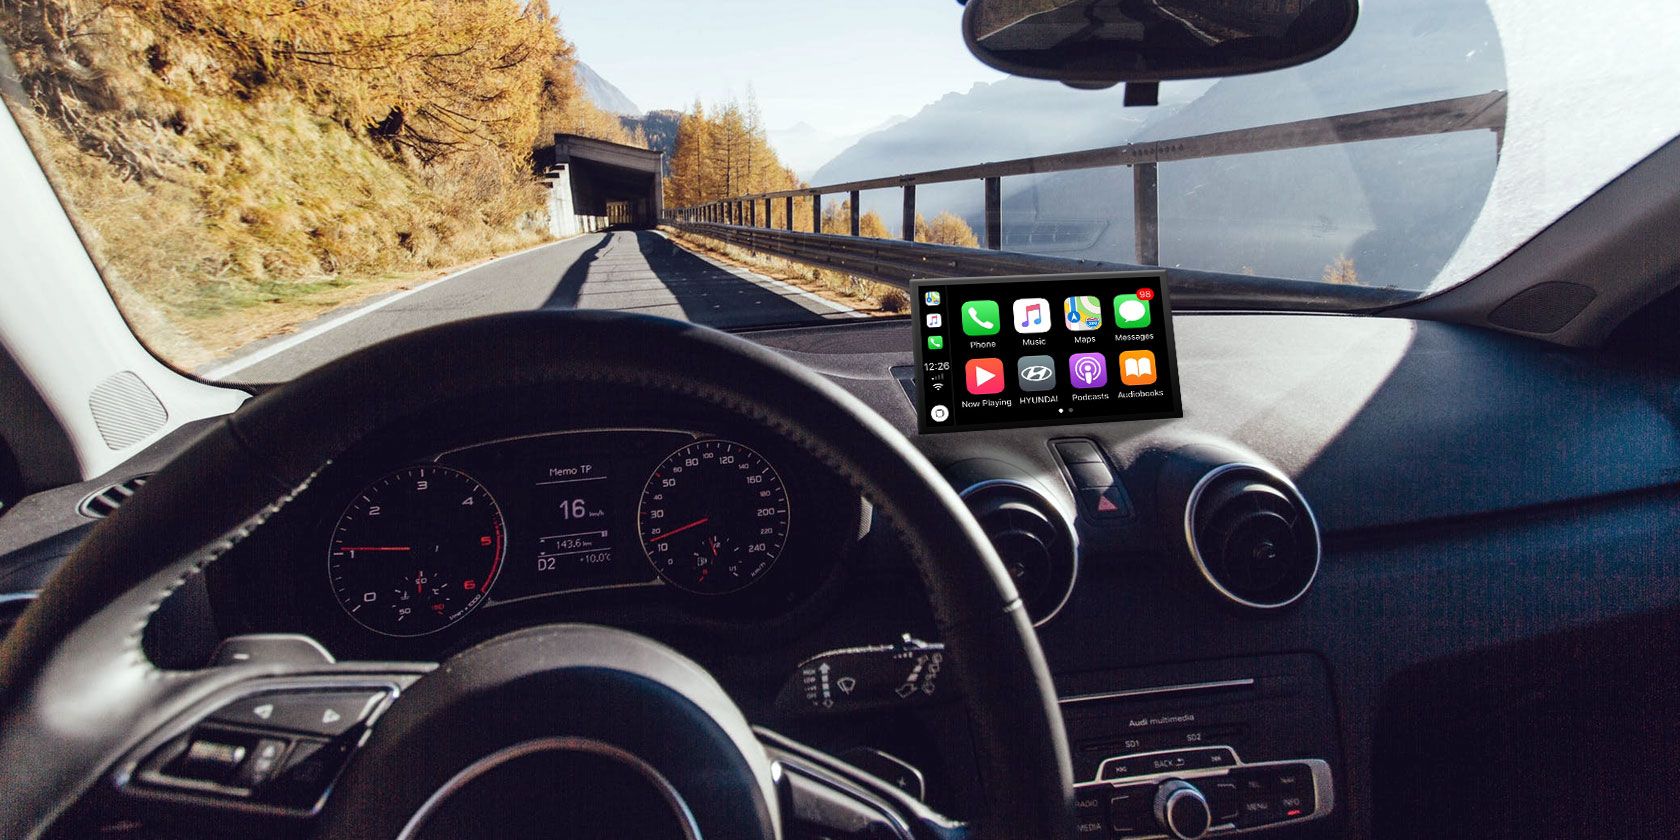 Apple CarPlay on vehicle display